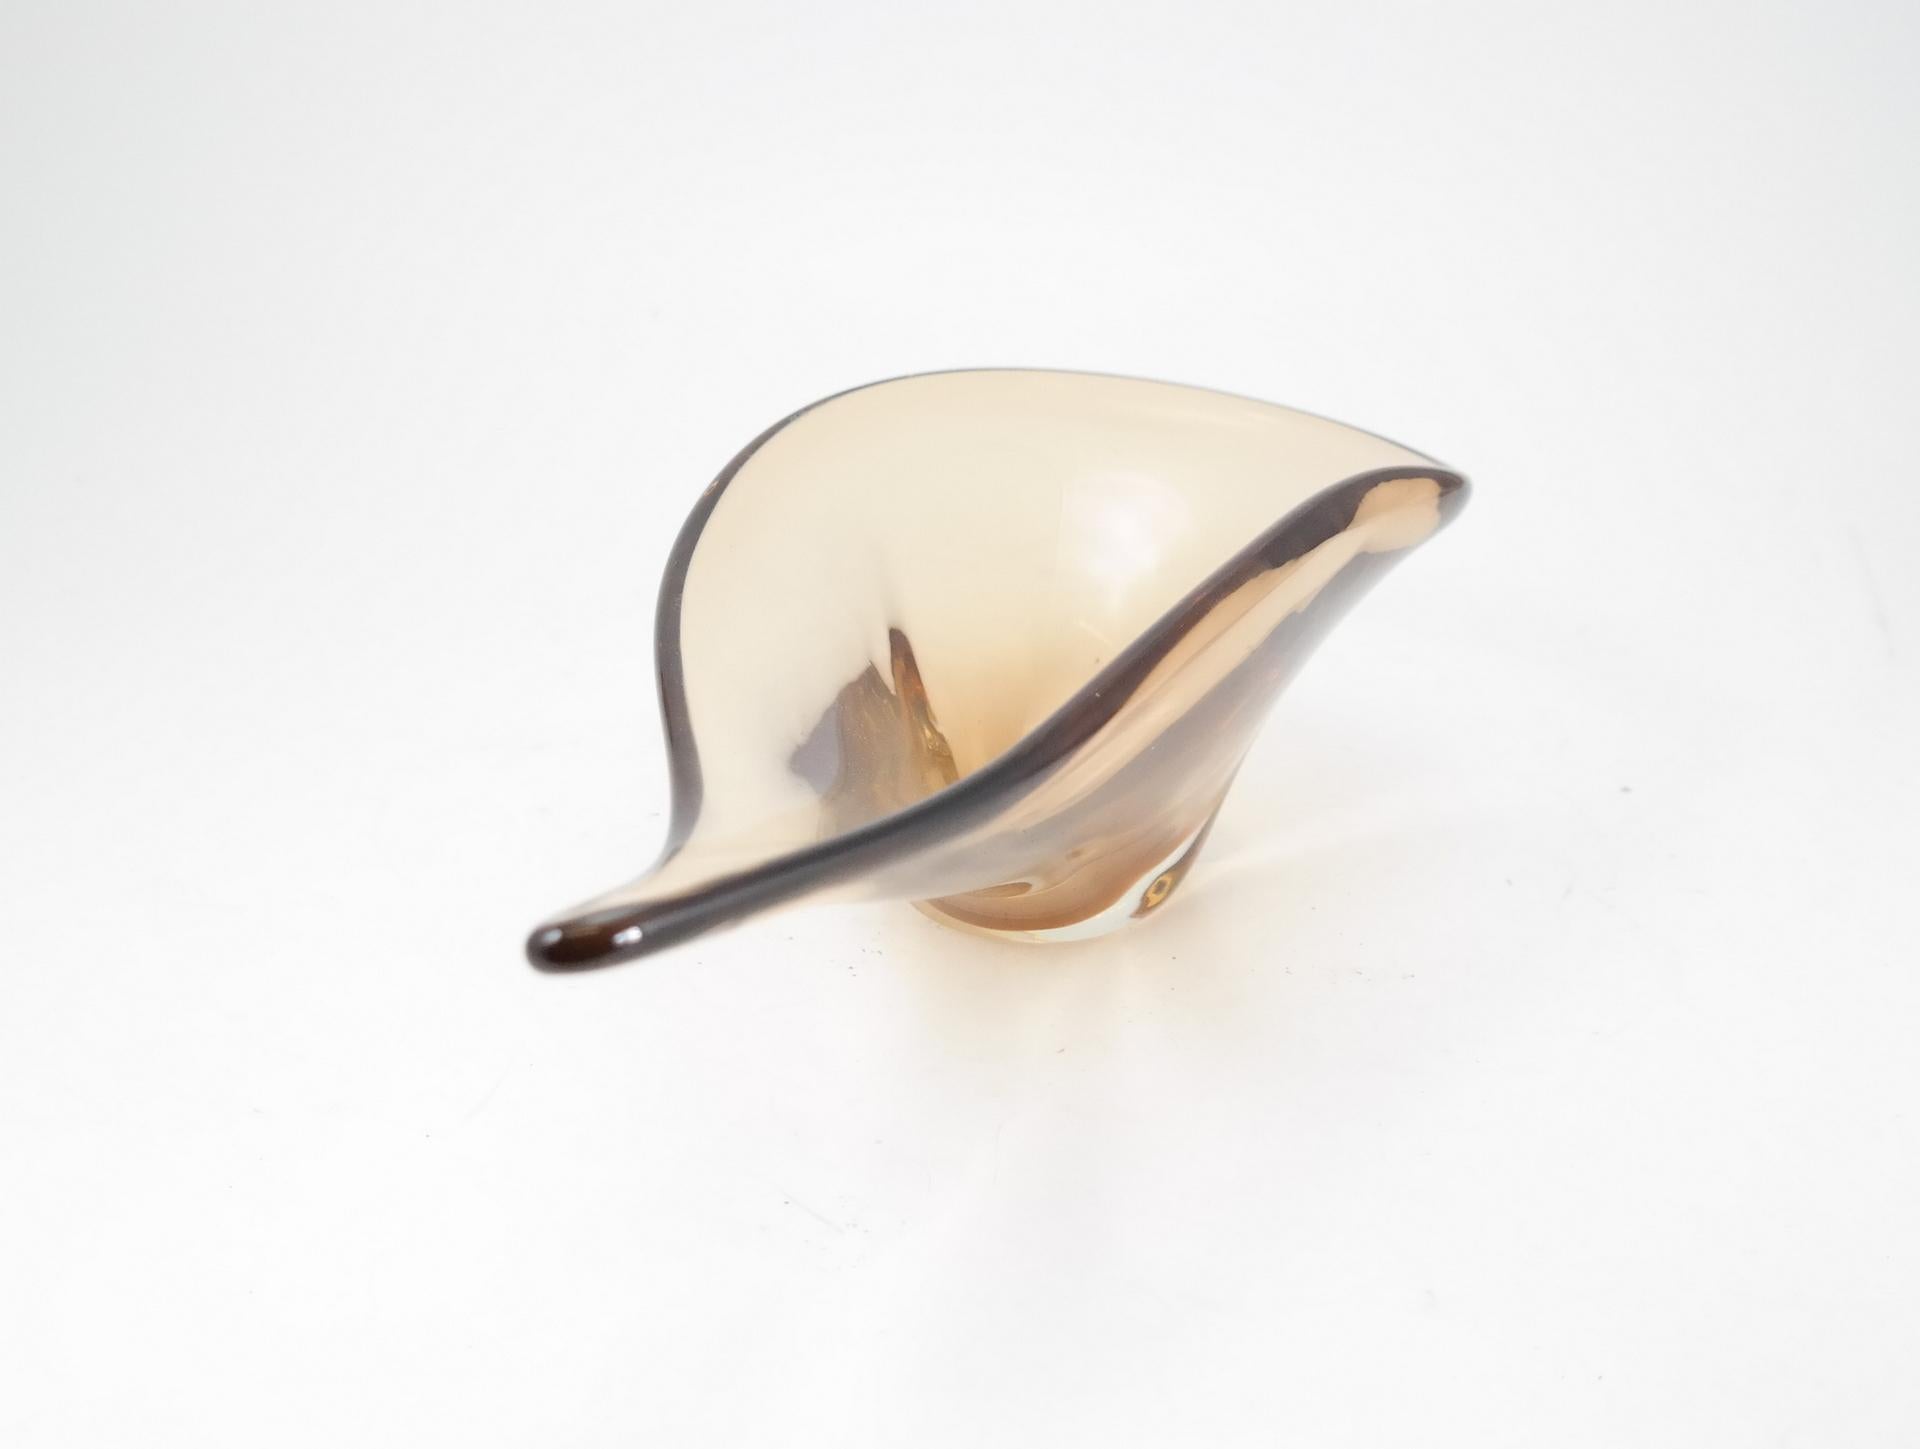 Asymmetrical bohemia glass bowl, 1970s.